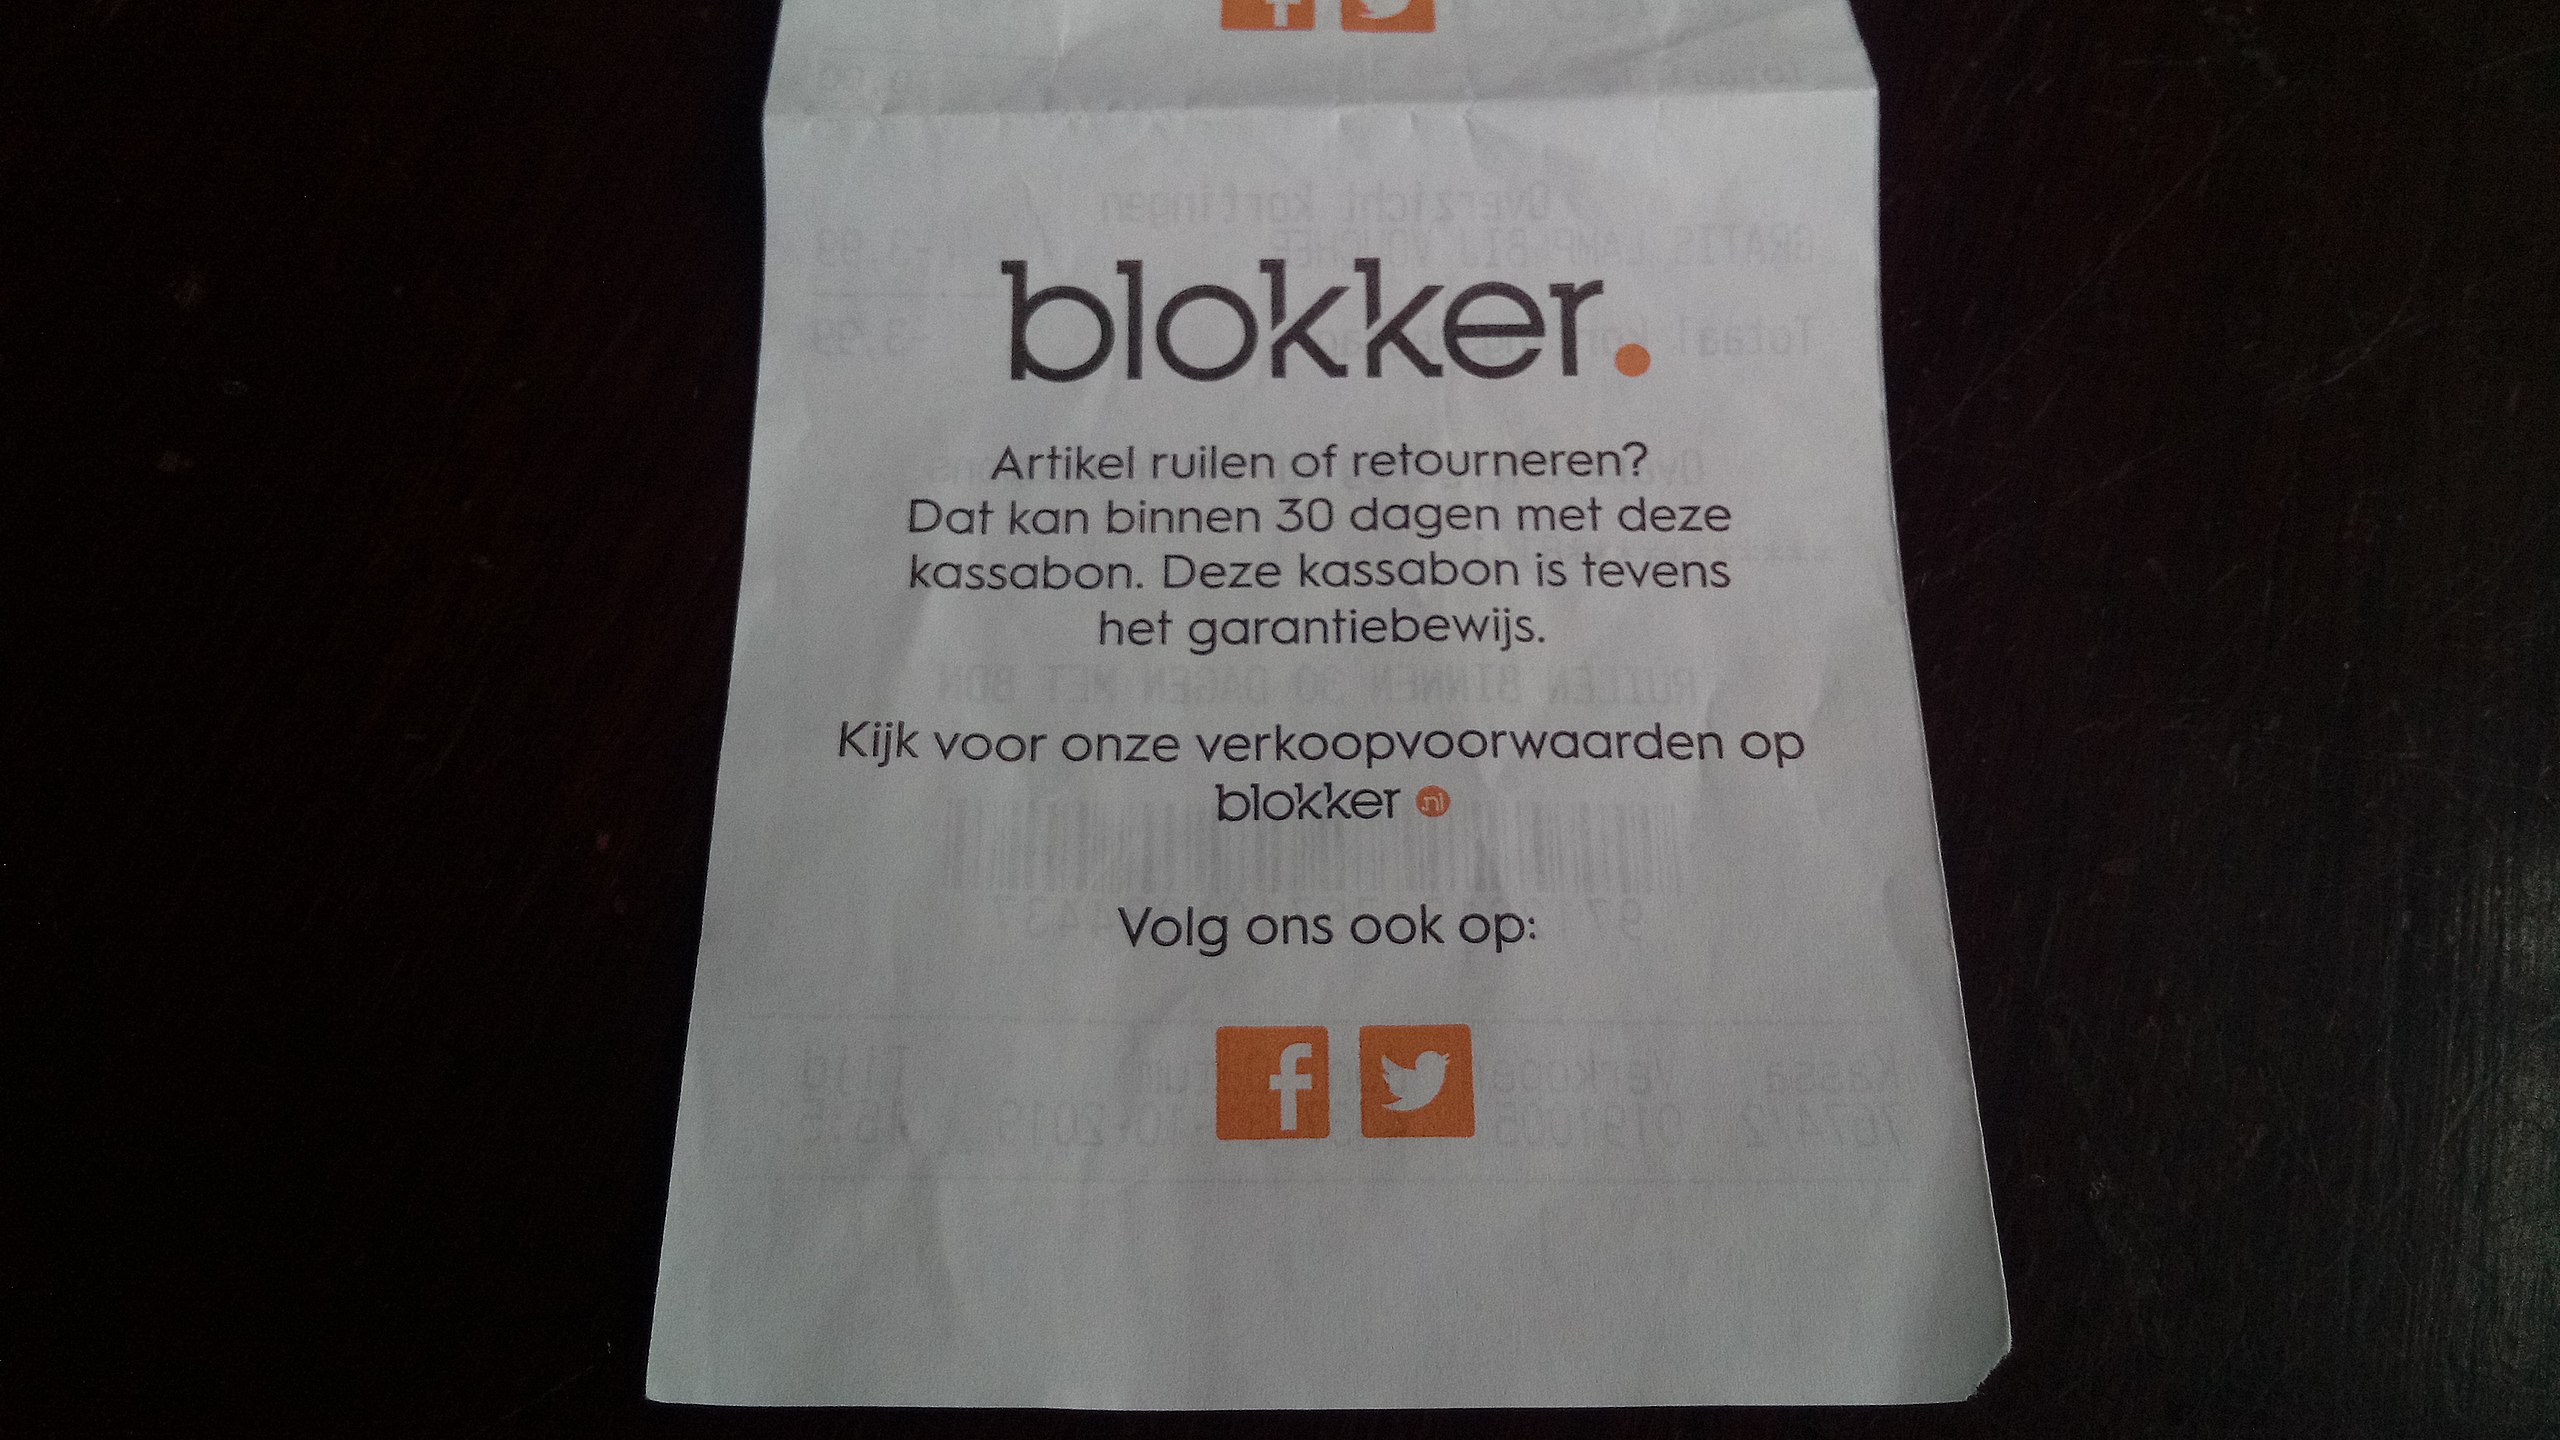 File:Blokker gratis LED receipt, Oude (2019) 07.jpg - Wikimedia Commons